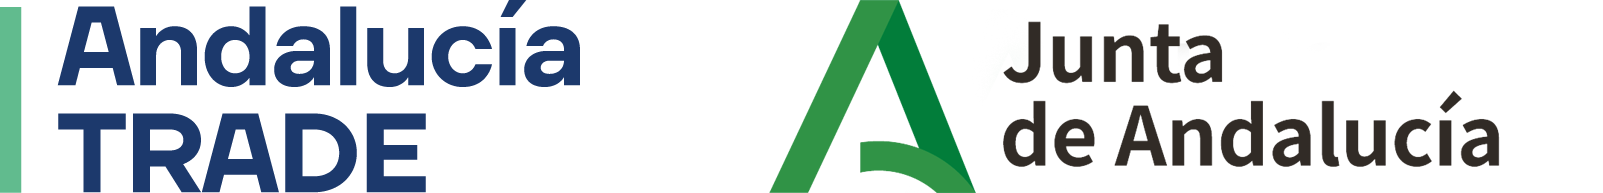 logo-Andalucia-Trade